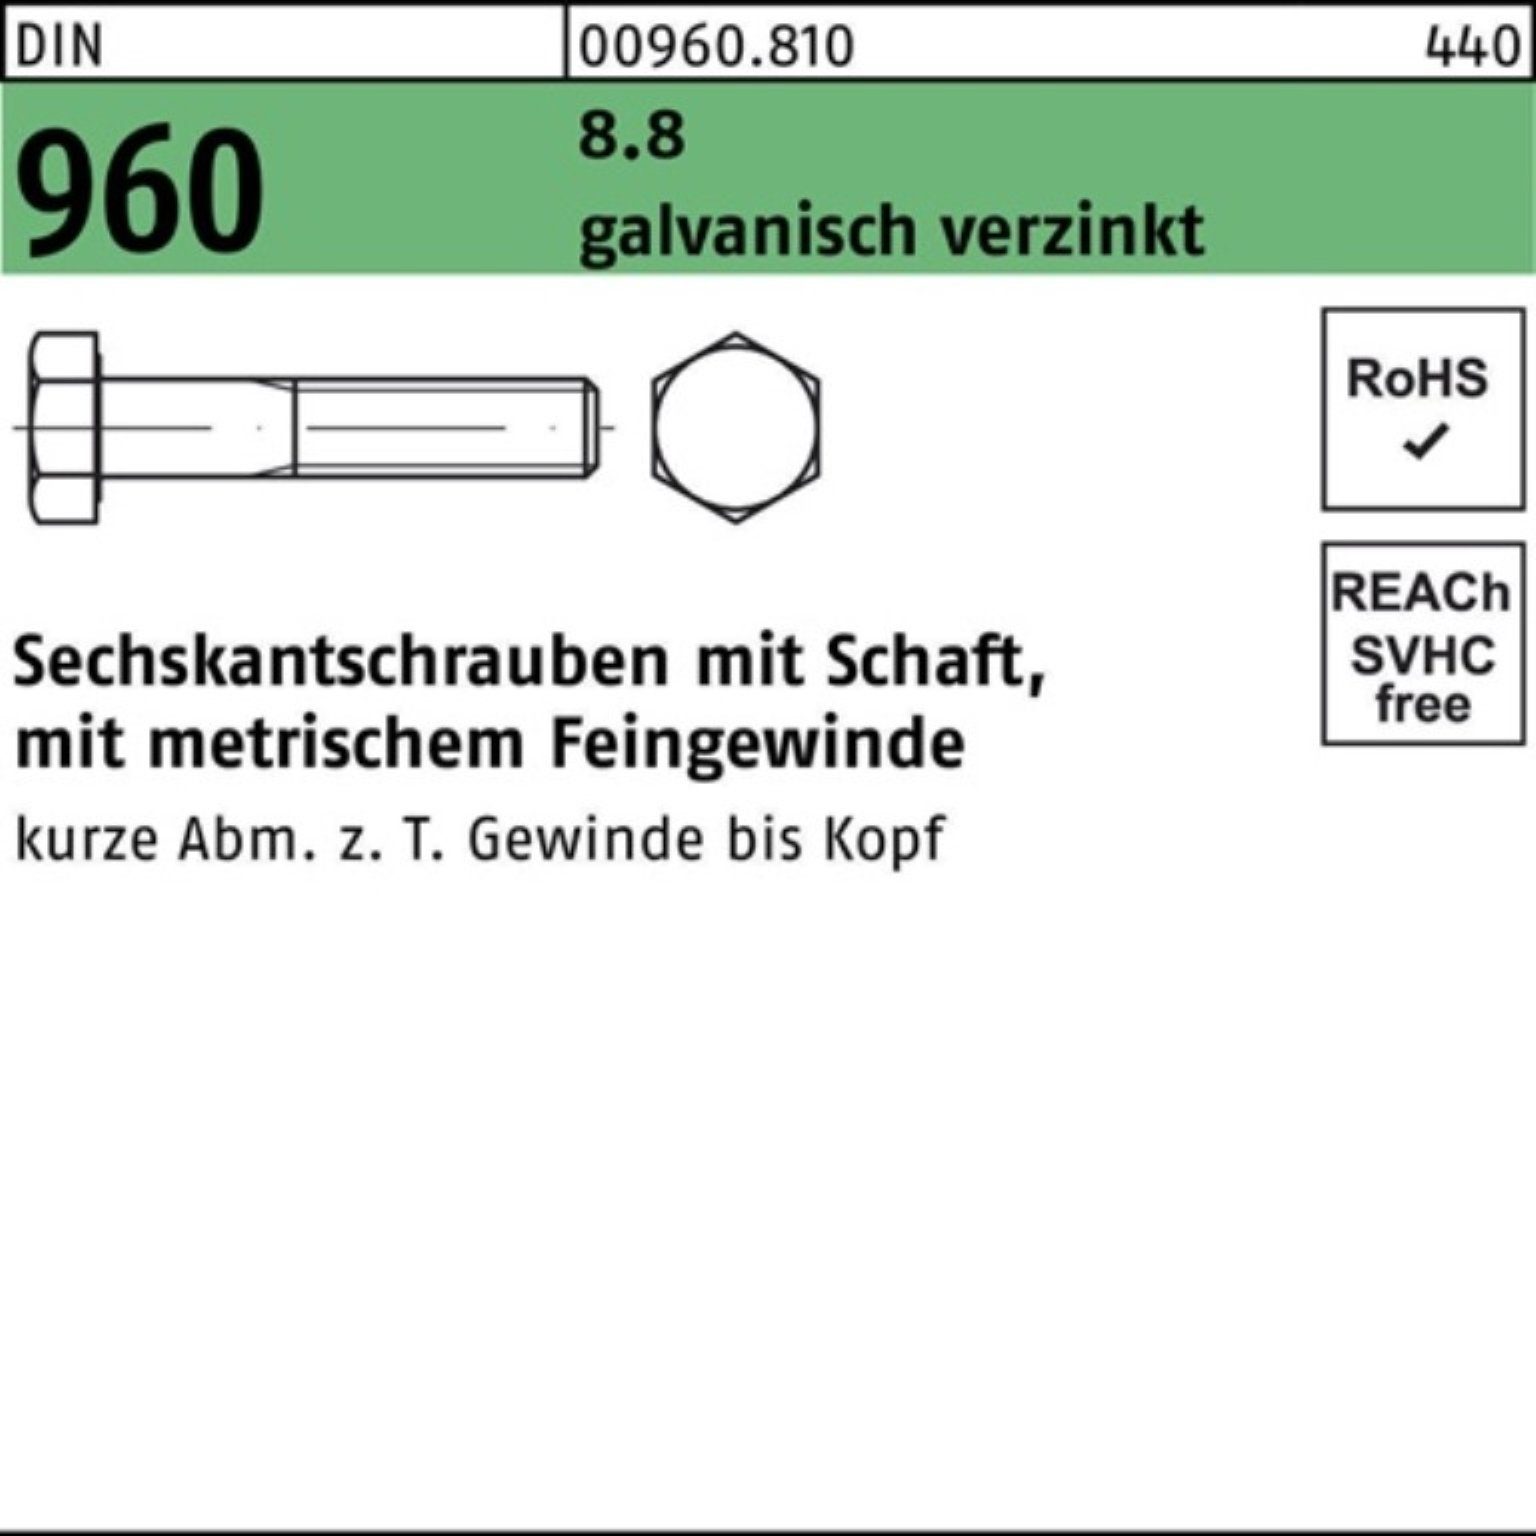 Reyher Schaft 100er M20x1,5x140 Sechskantschraube DIN Pack 8.8 Sechskantschraube 960 galv.verz.